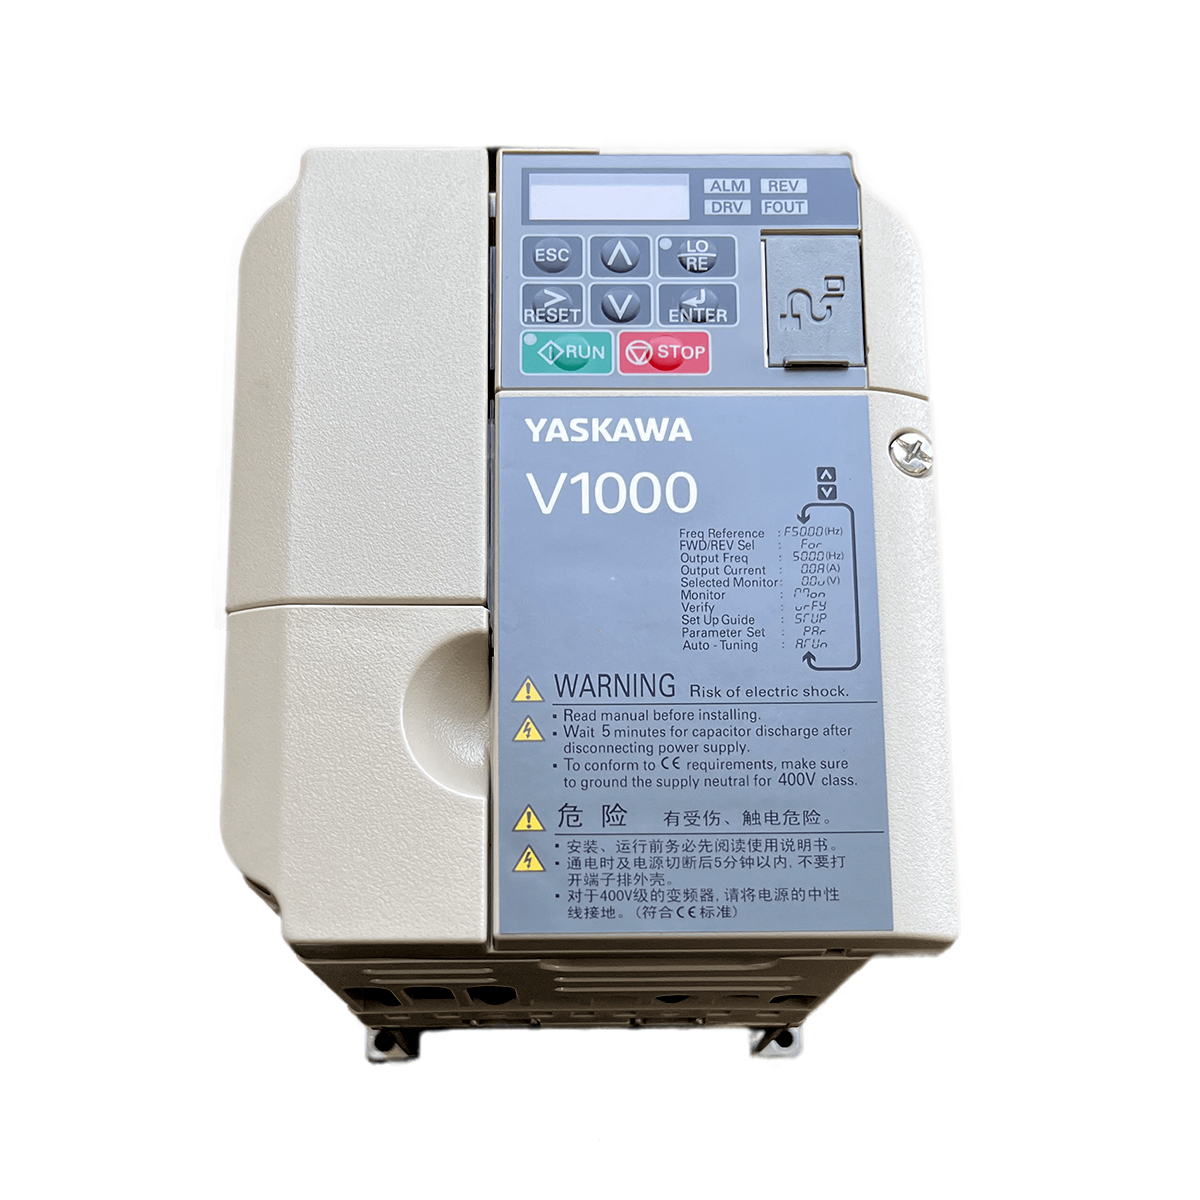 اینورتر یاسکاوا مدل V1000 کد CIMR-VB4A0007 ظرفیت 2.2 کیلووات